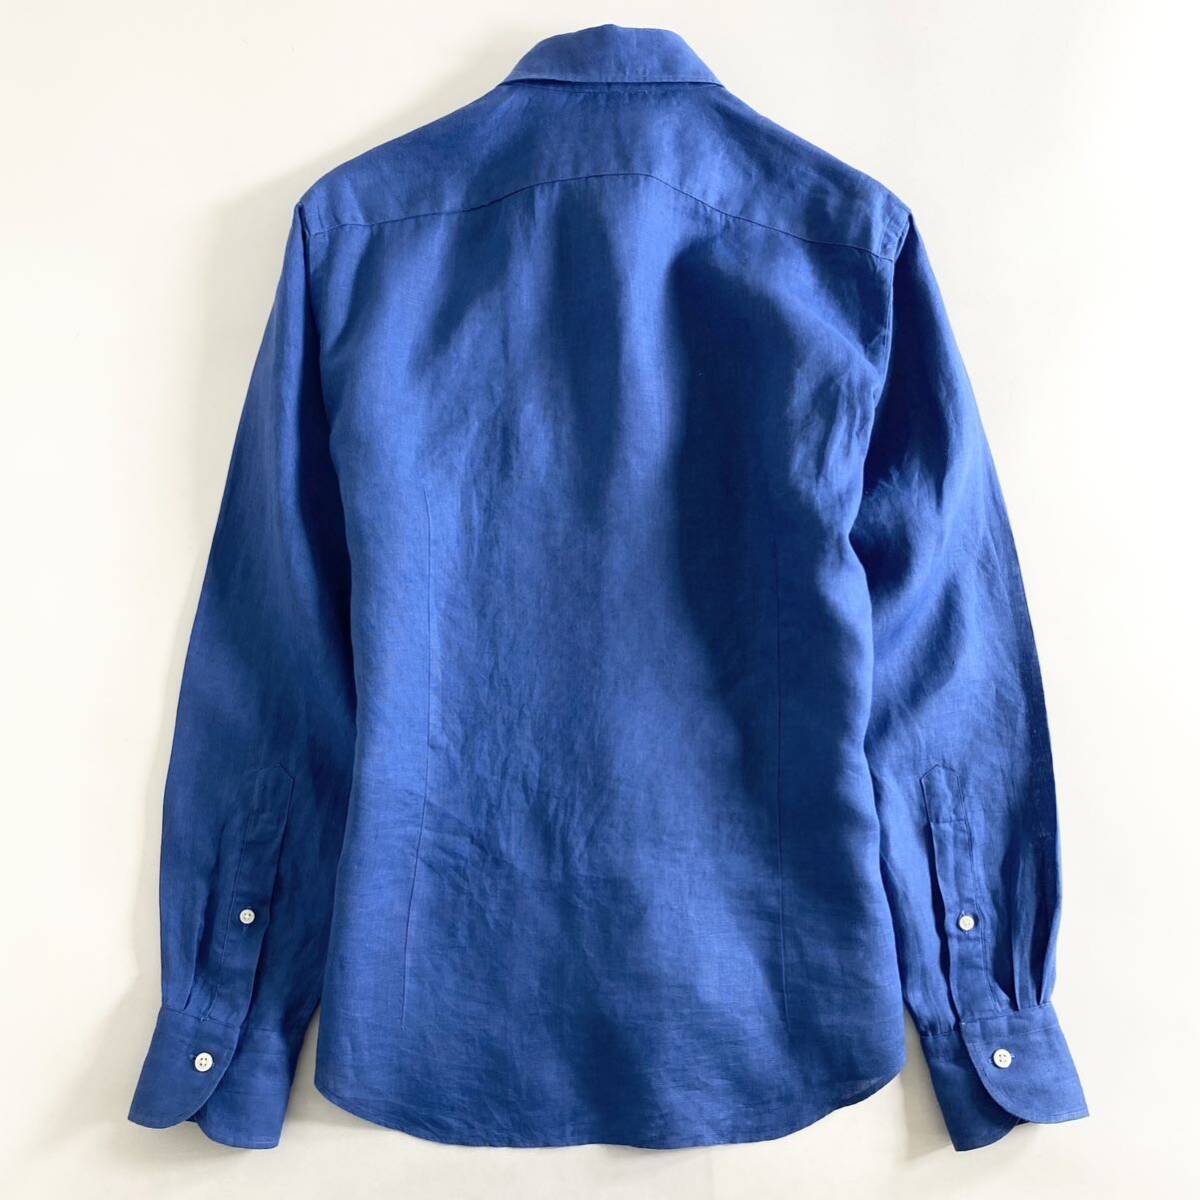 Hc22-12 日本製 Maker's Shirt 鎌倉シャツ Linen リネン 麻100% 長袖シャツ ドレスシャツ ドレスカジュアル 14.5/37 M相当 ブルー メンズ_画像2